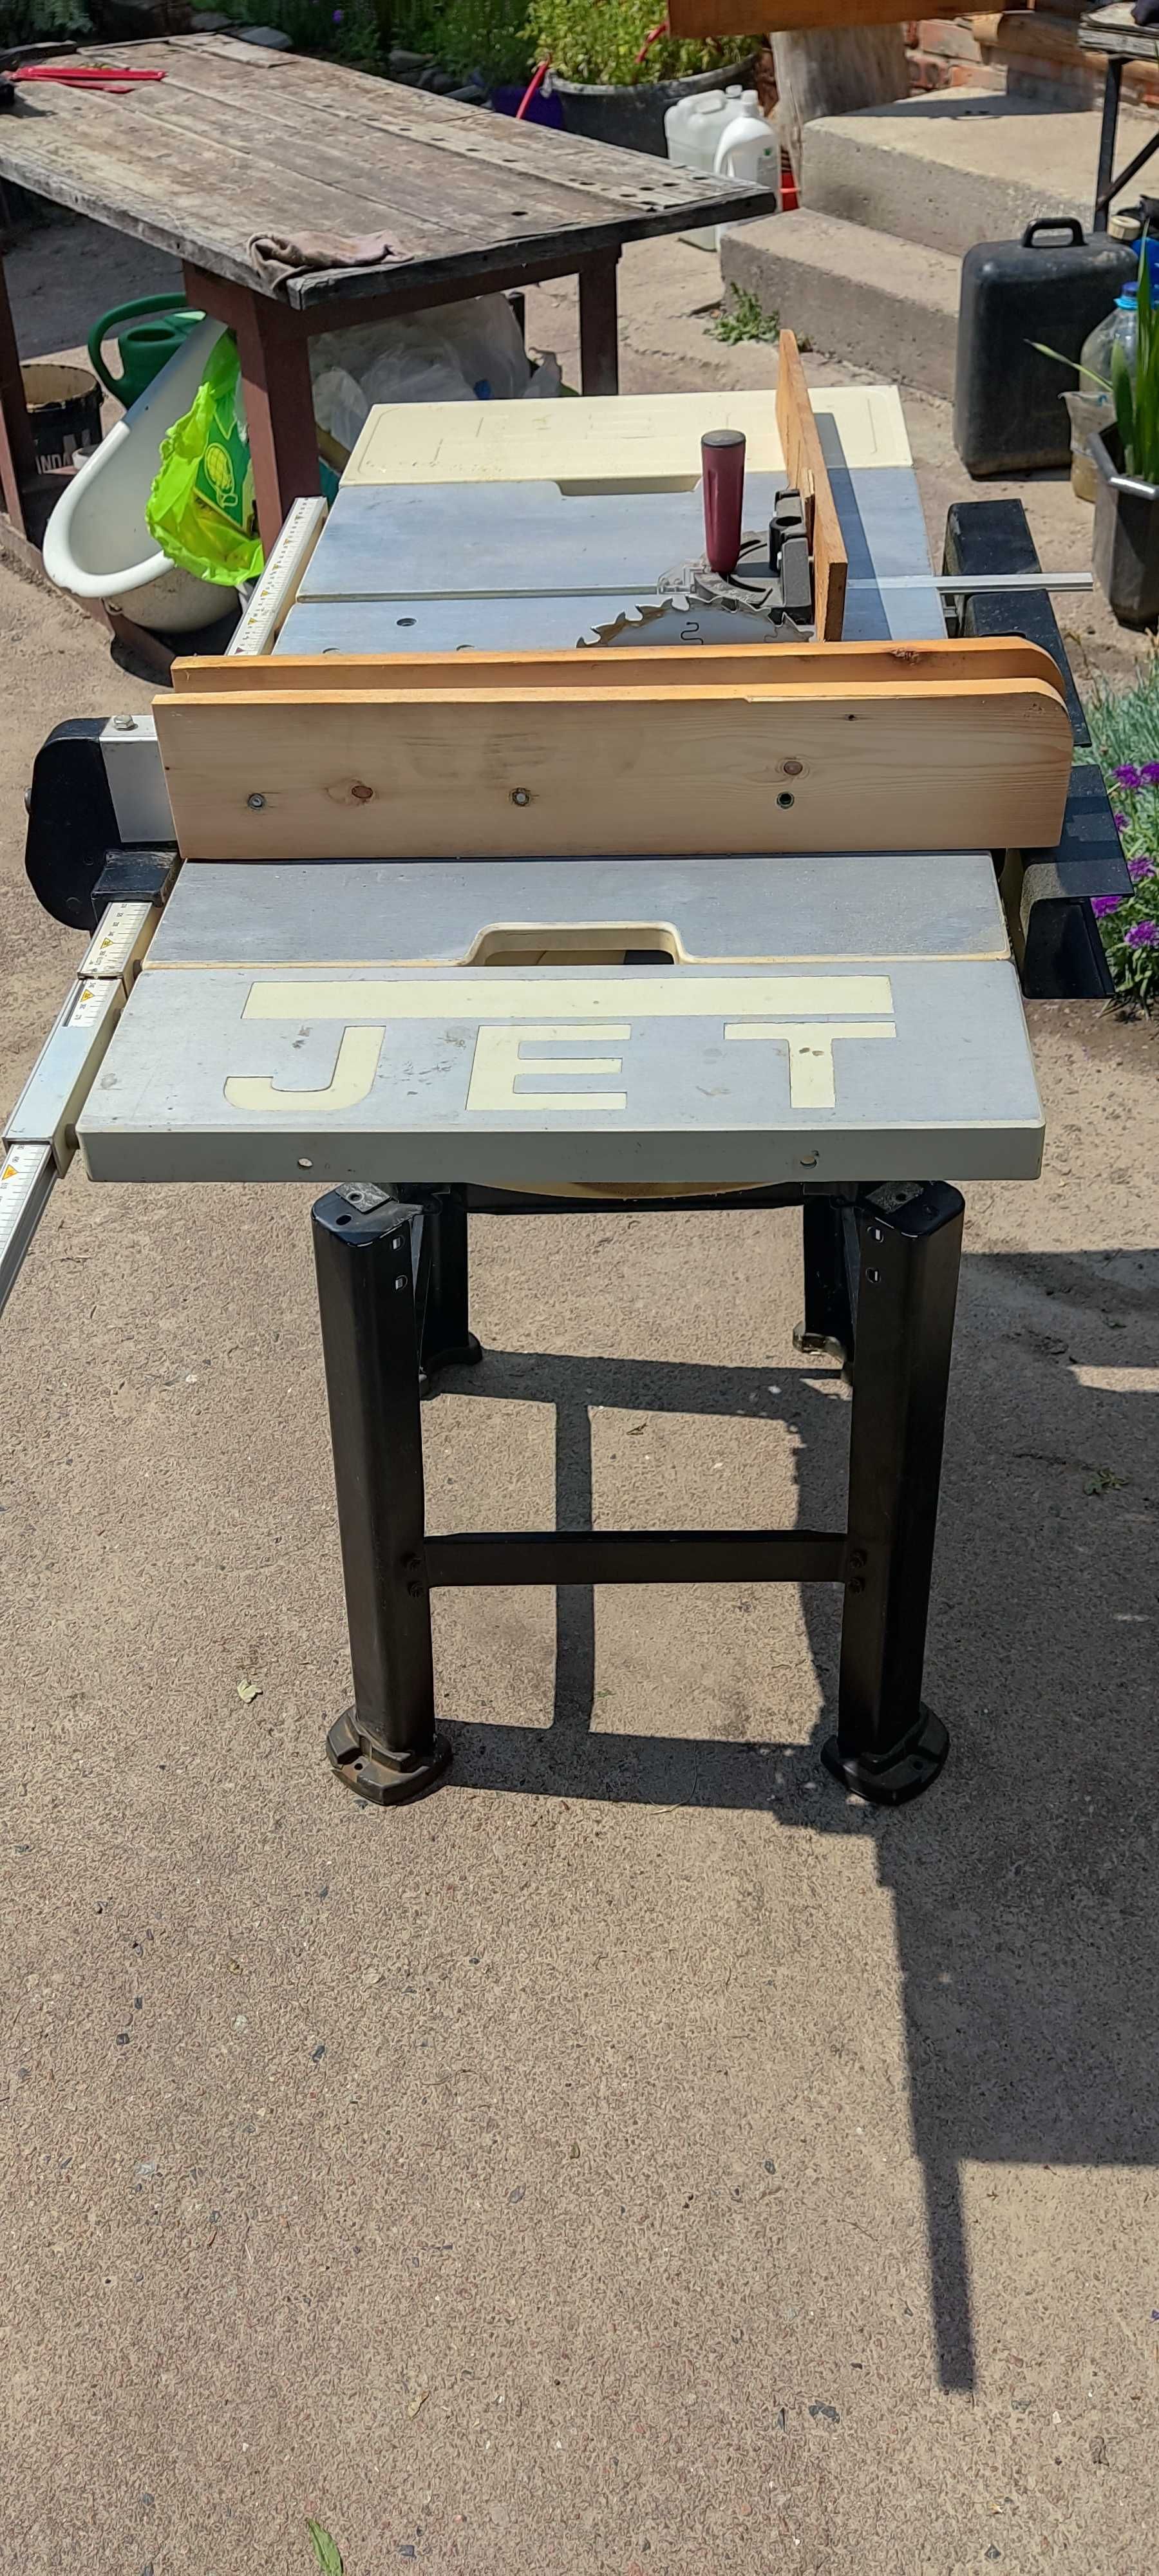 Циркулярный станок Jet JBTS-10